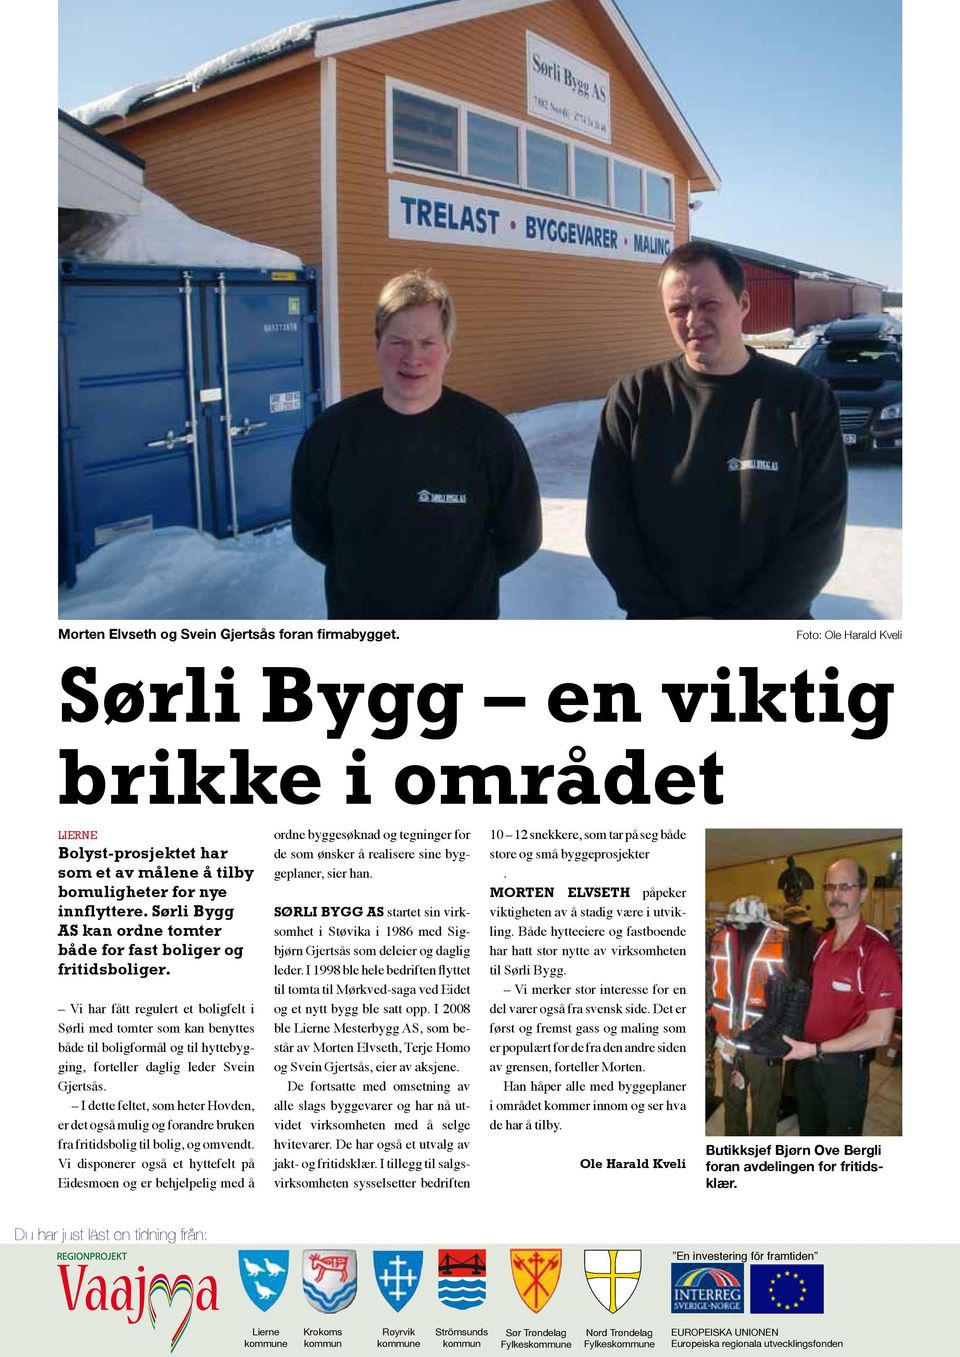 Vi har fått regulert et boligfelt i Sørli med tomter som kan benyttes både til boligformål og til hyttebygging, forteller daglig leder Svein Gjertsås.